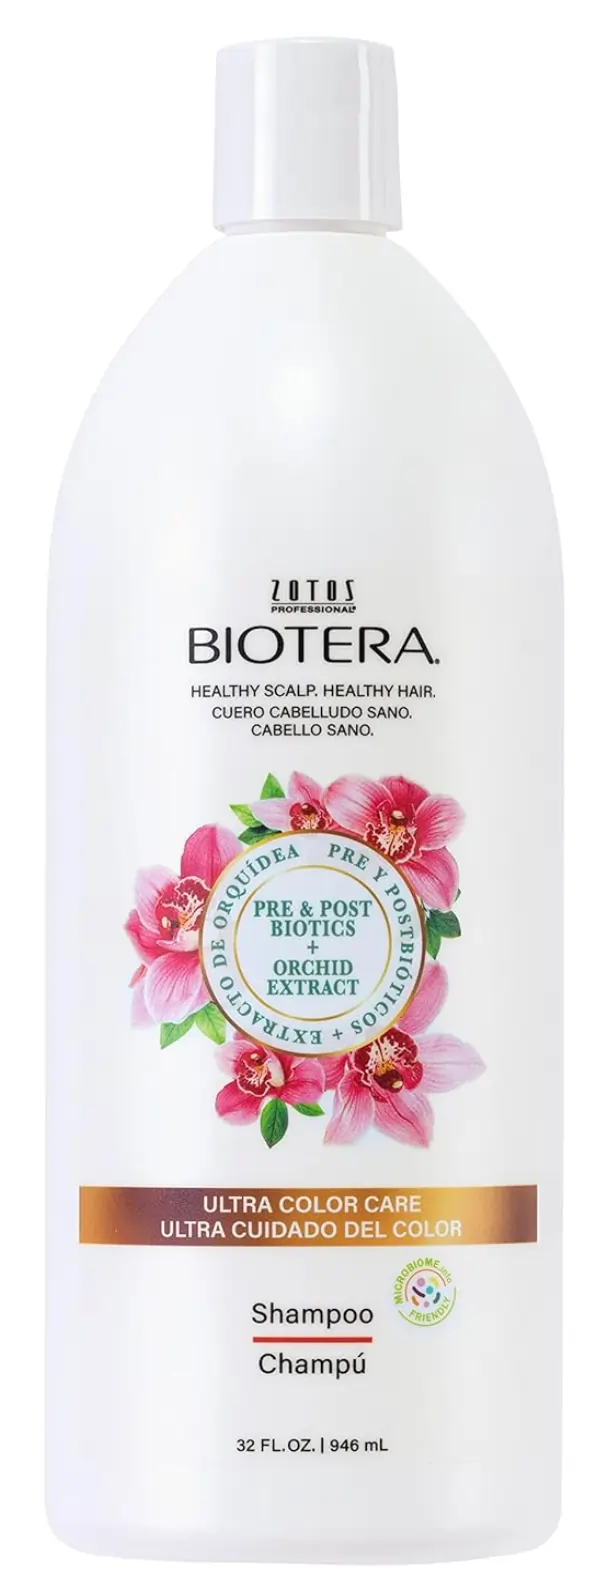 A tied FEMMENORDIC's choice in the Biotera vs Biolage shampoo comparison, Biotera Ultra Color Care Shampoo